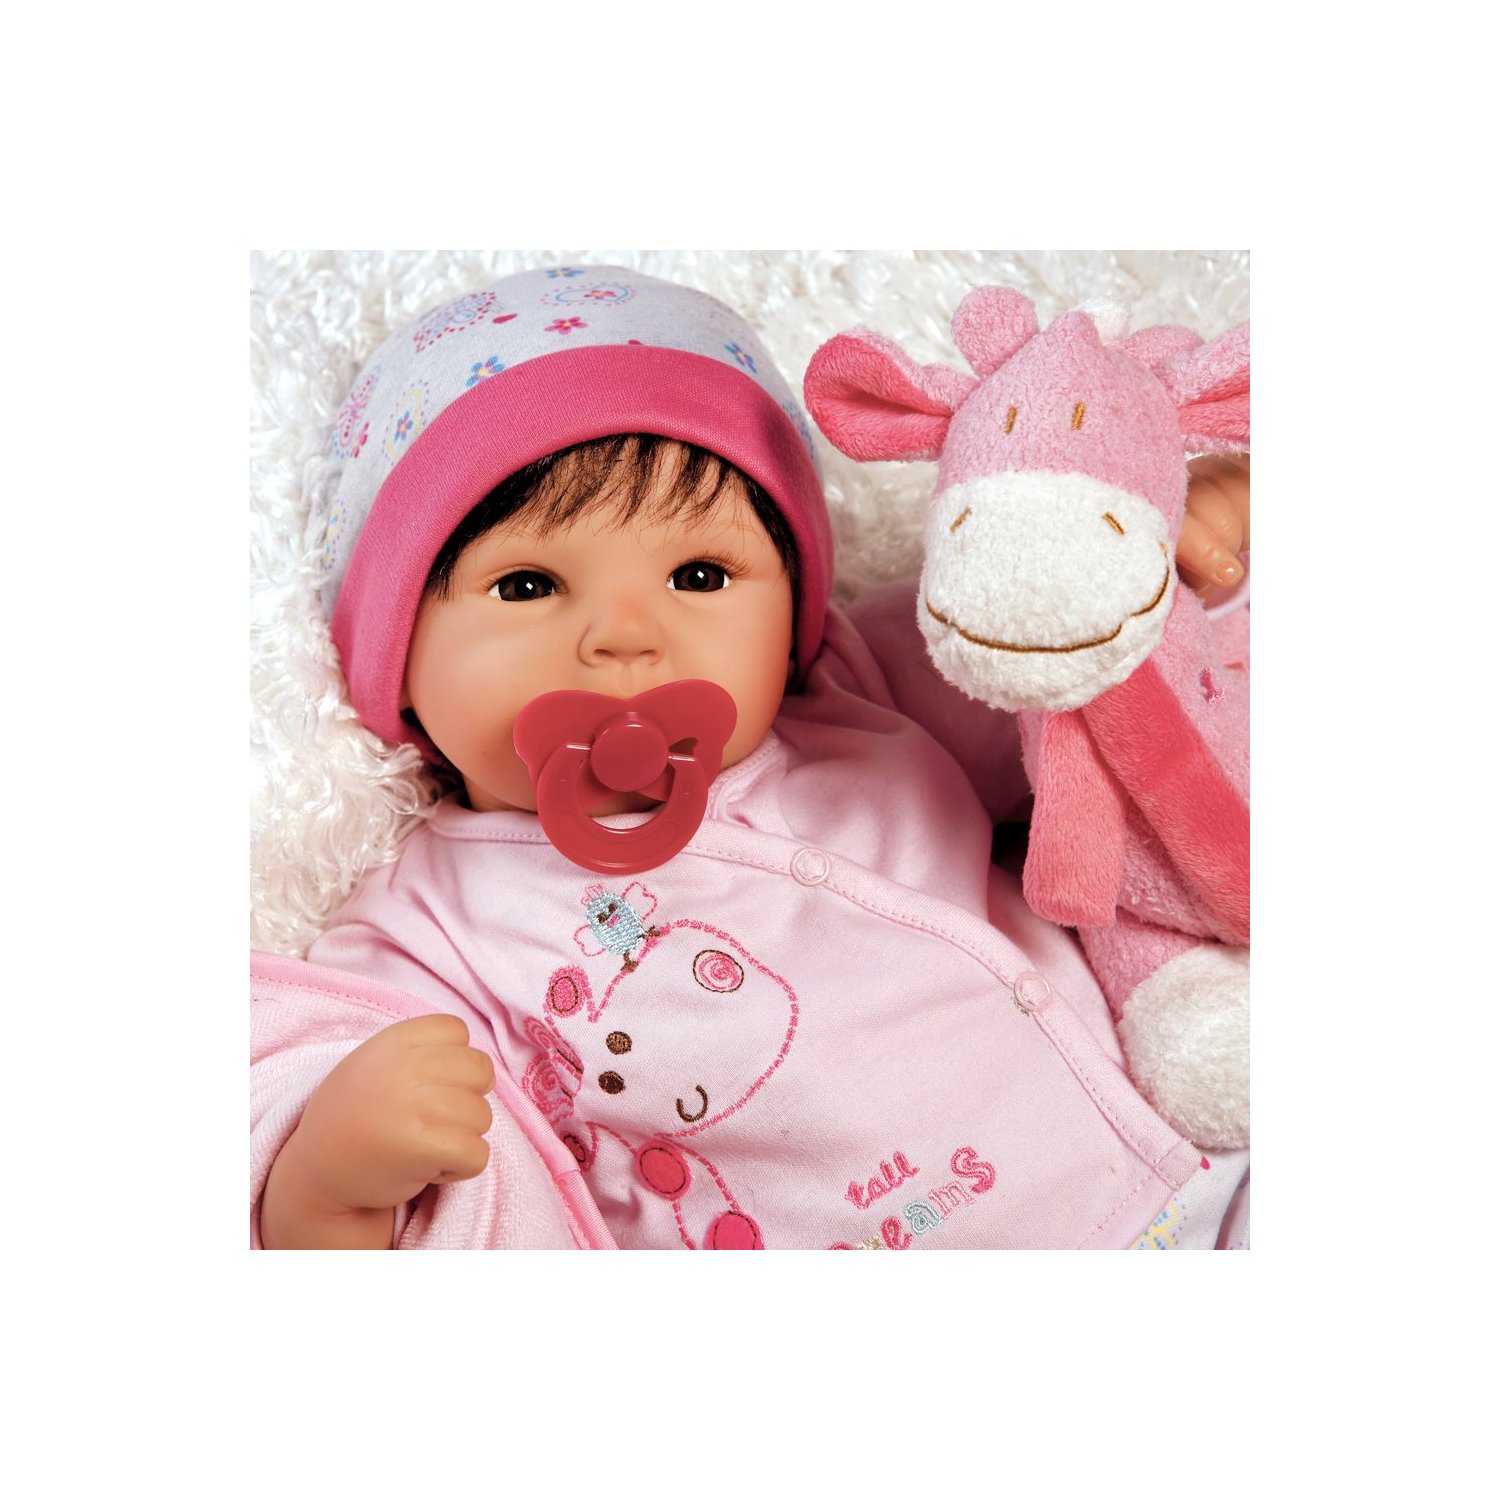 ตุ๊กตา Adora แท้ 100% นำเข้าจากต่างประเทศ มีทั้งตุ๊กตาทารก และตุ๊กตาเด็กเหมือนจริง น่ารักมากๆ ค่ะ รูปที่ 1